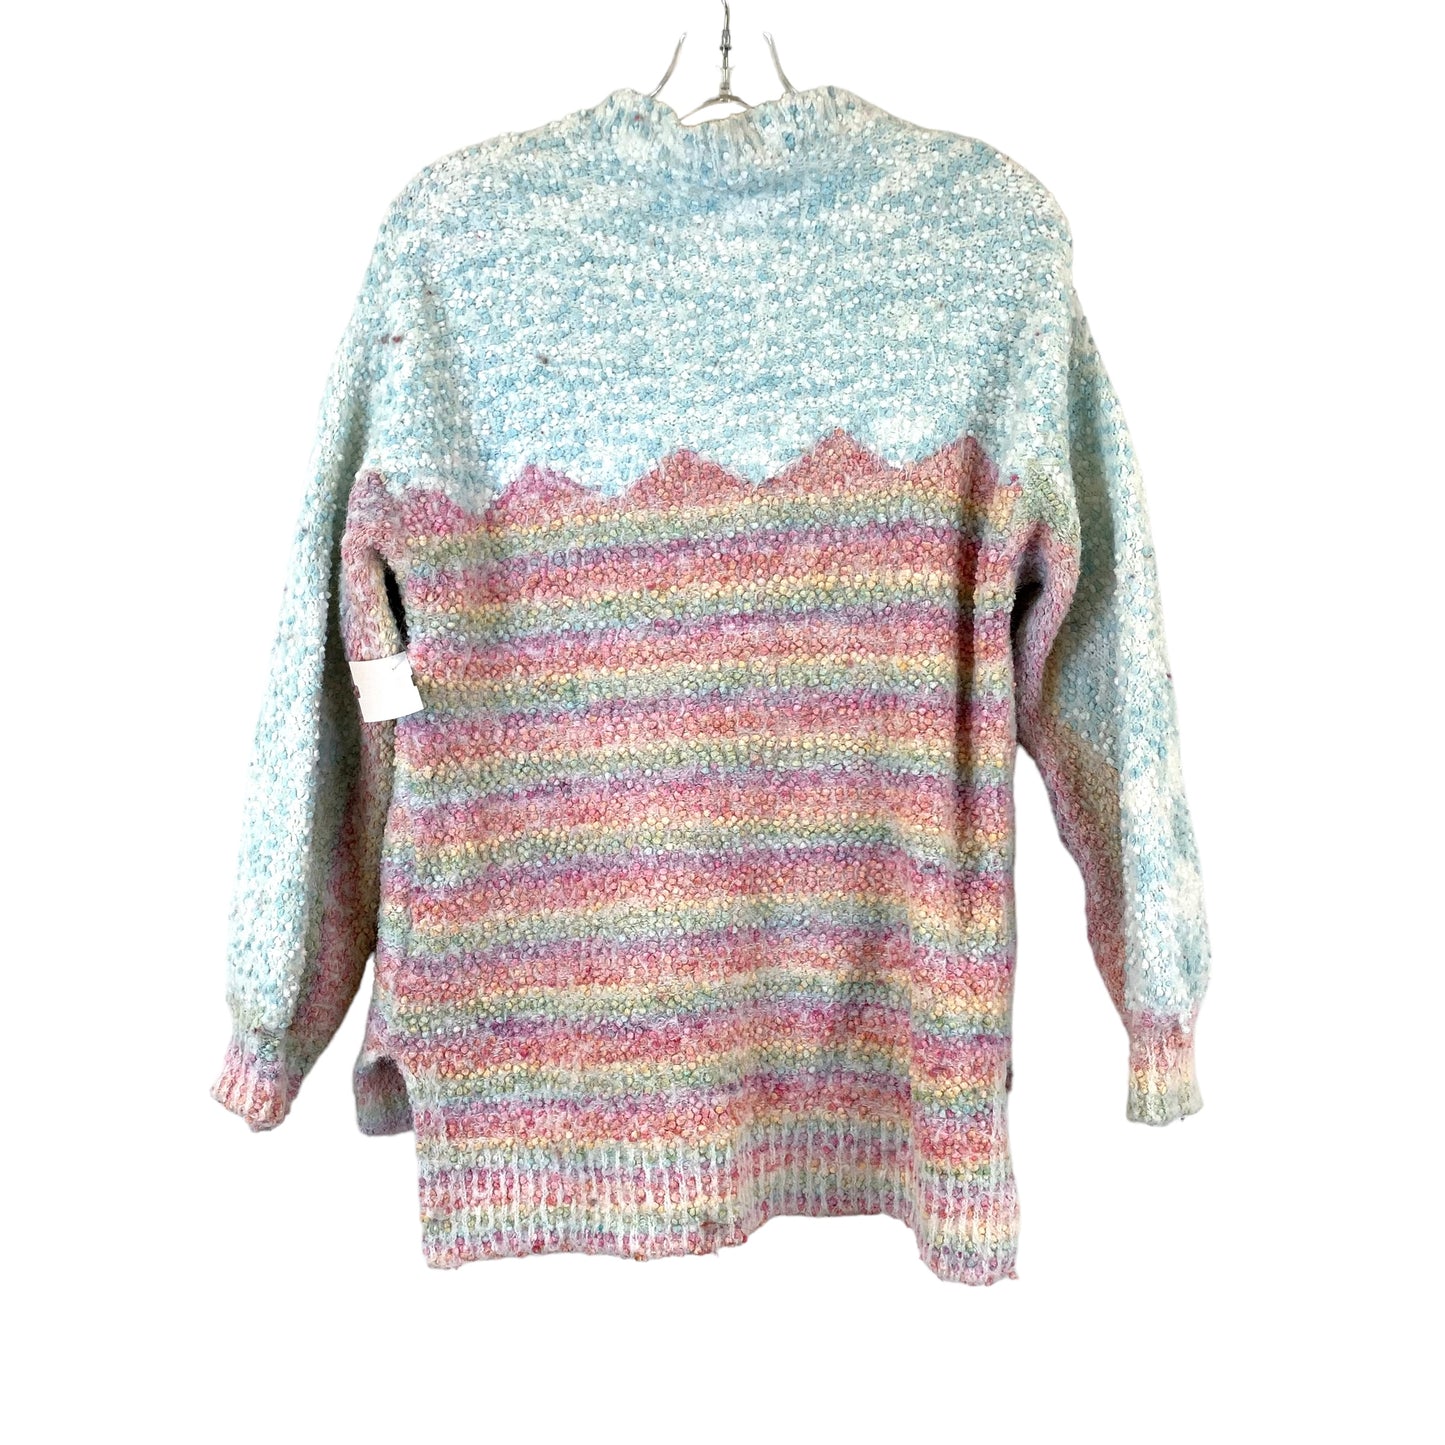 Sweater By Oddi  Size: S